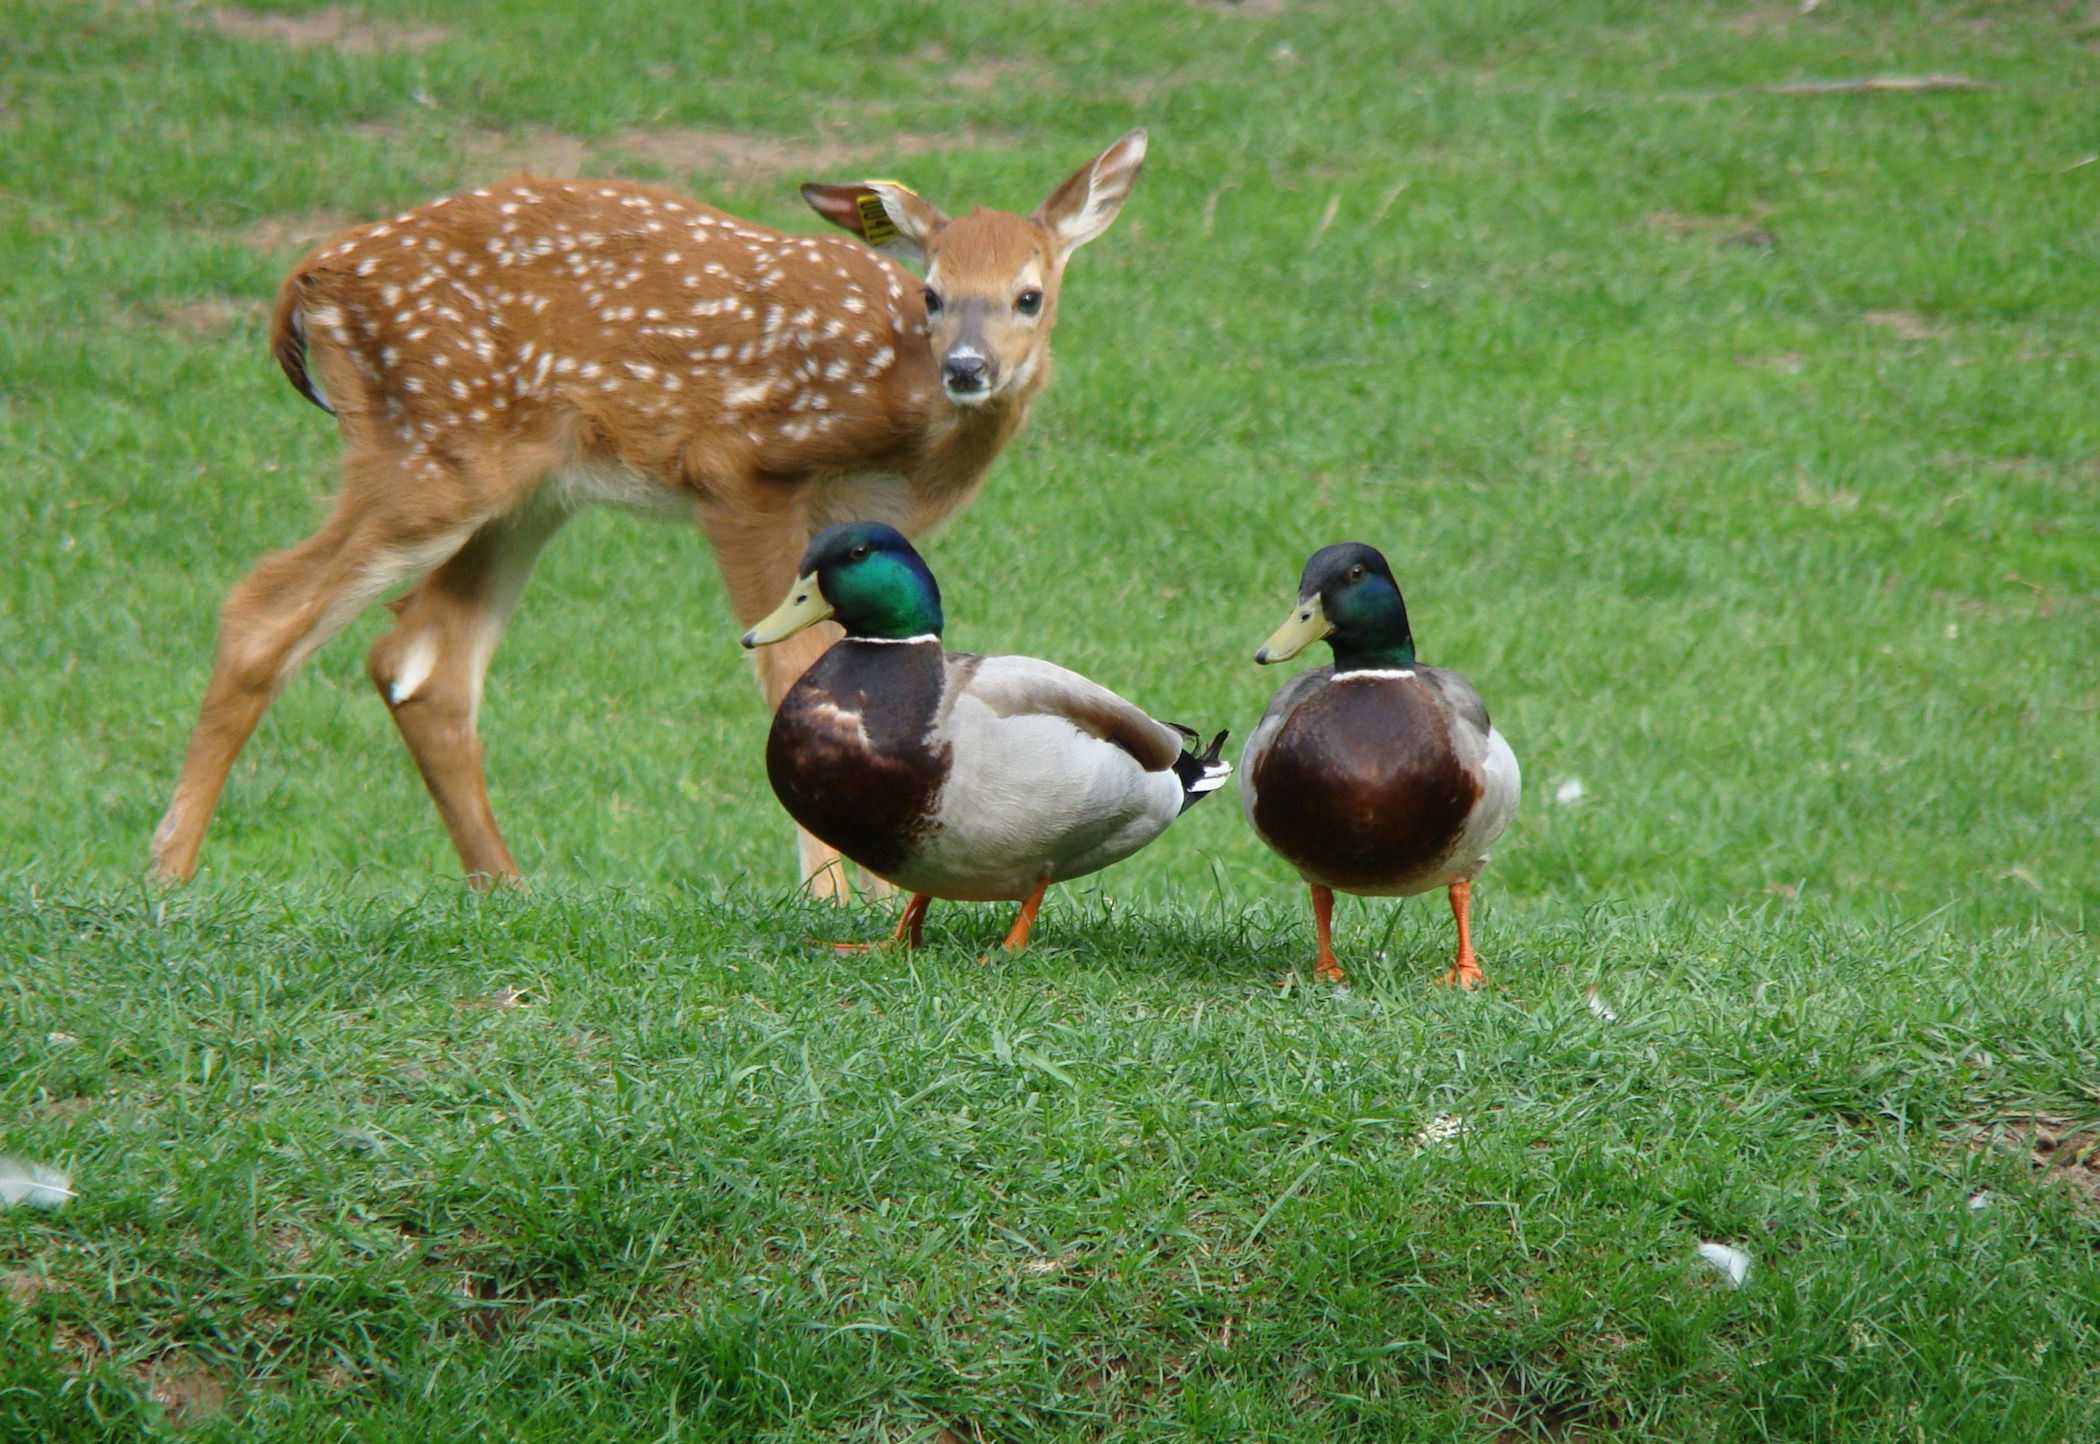 Deer & Ducks